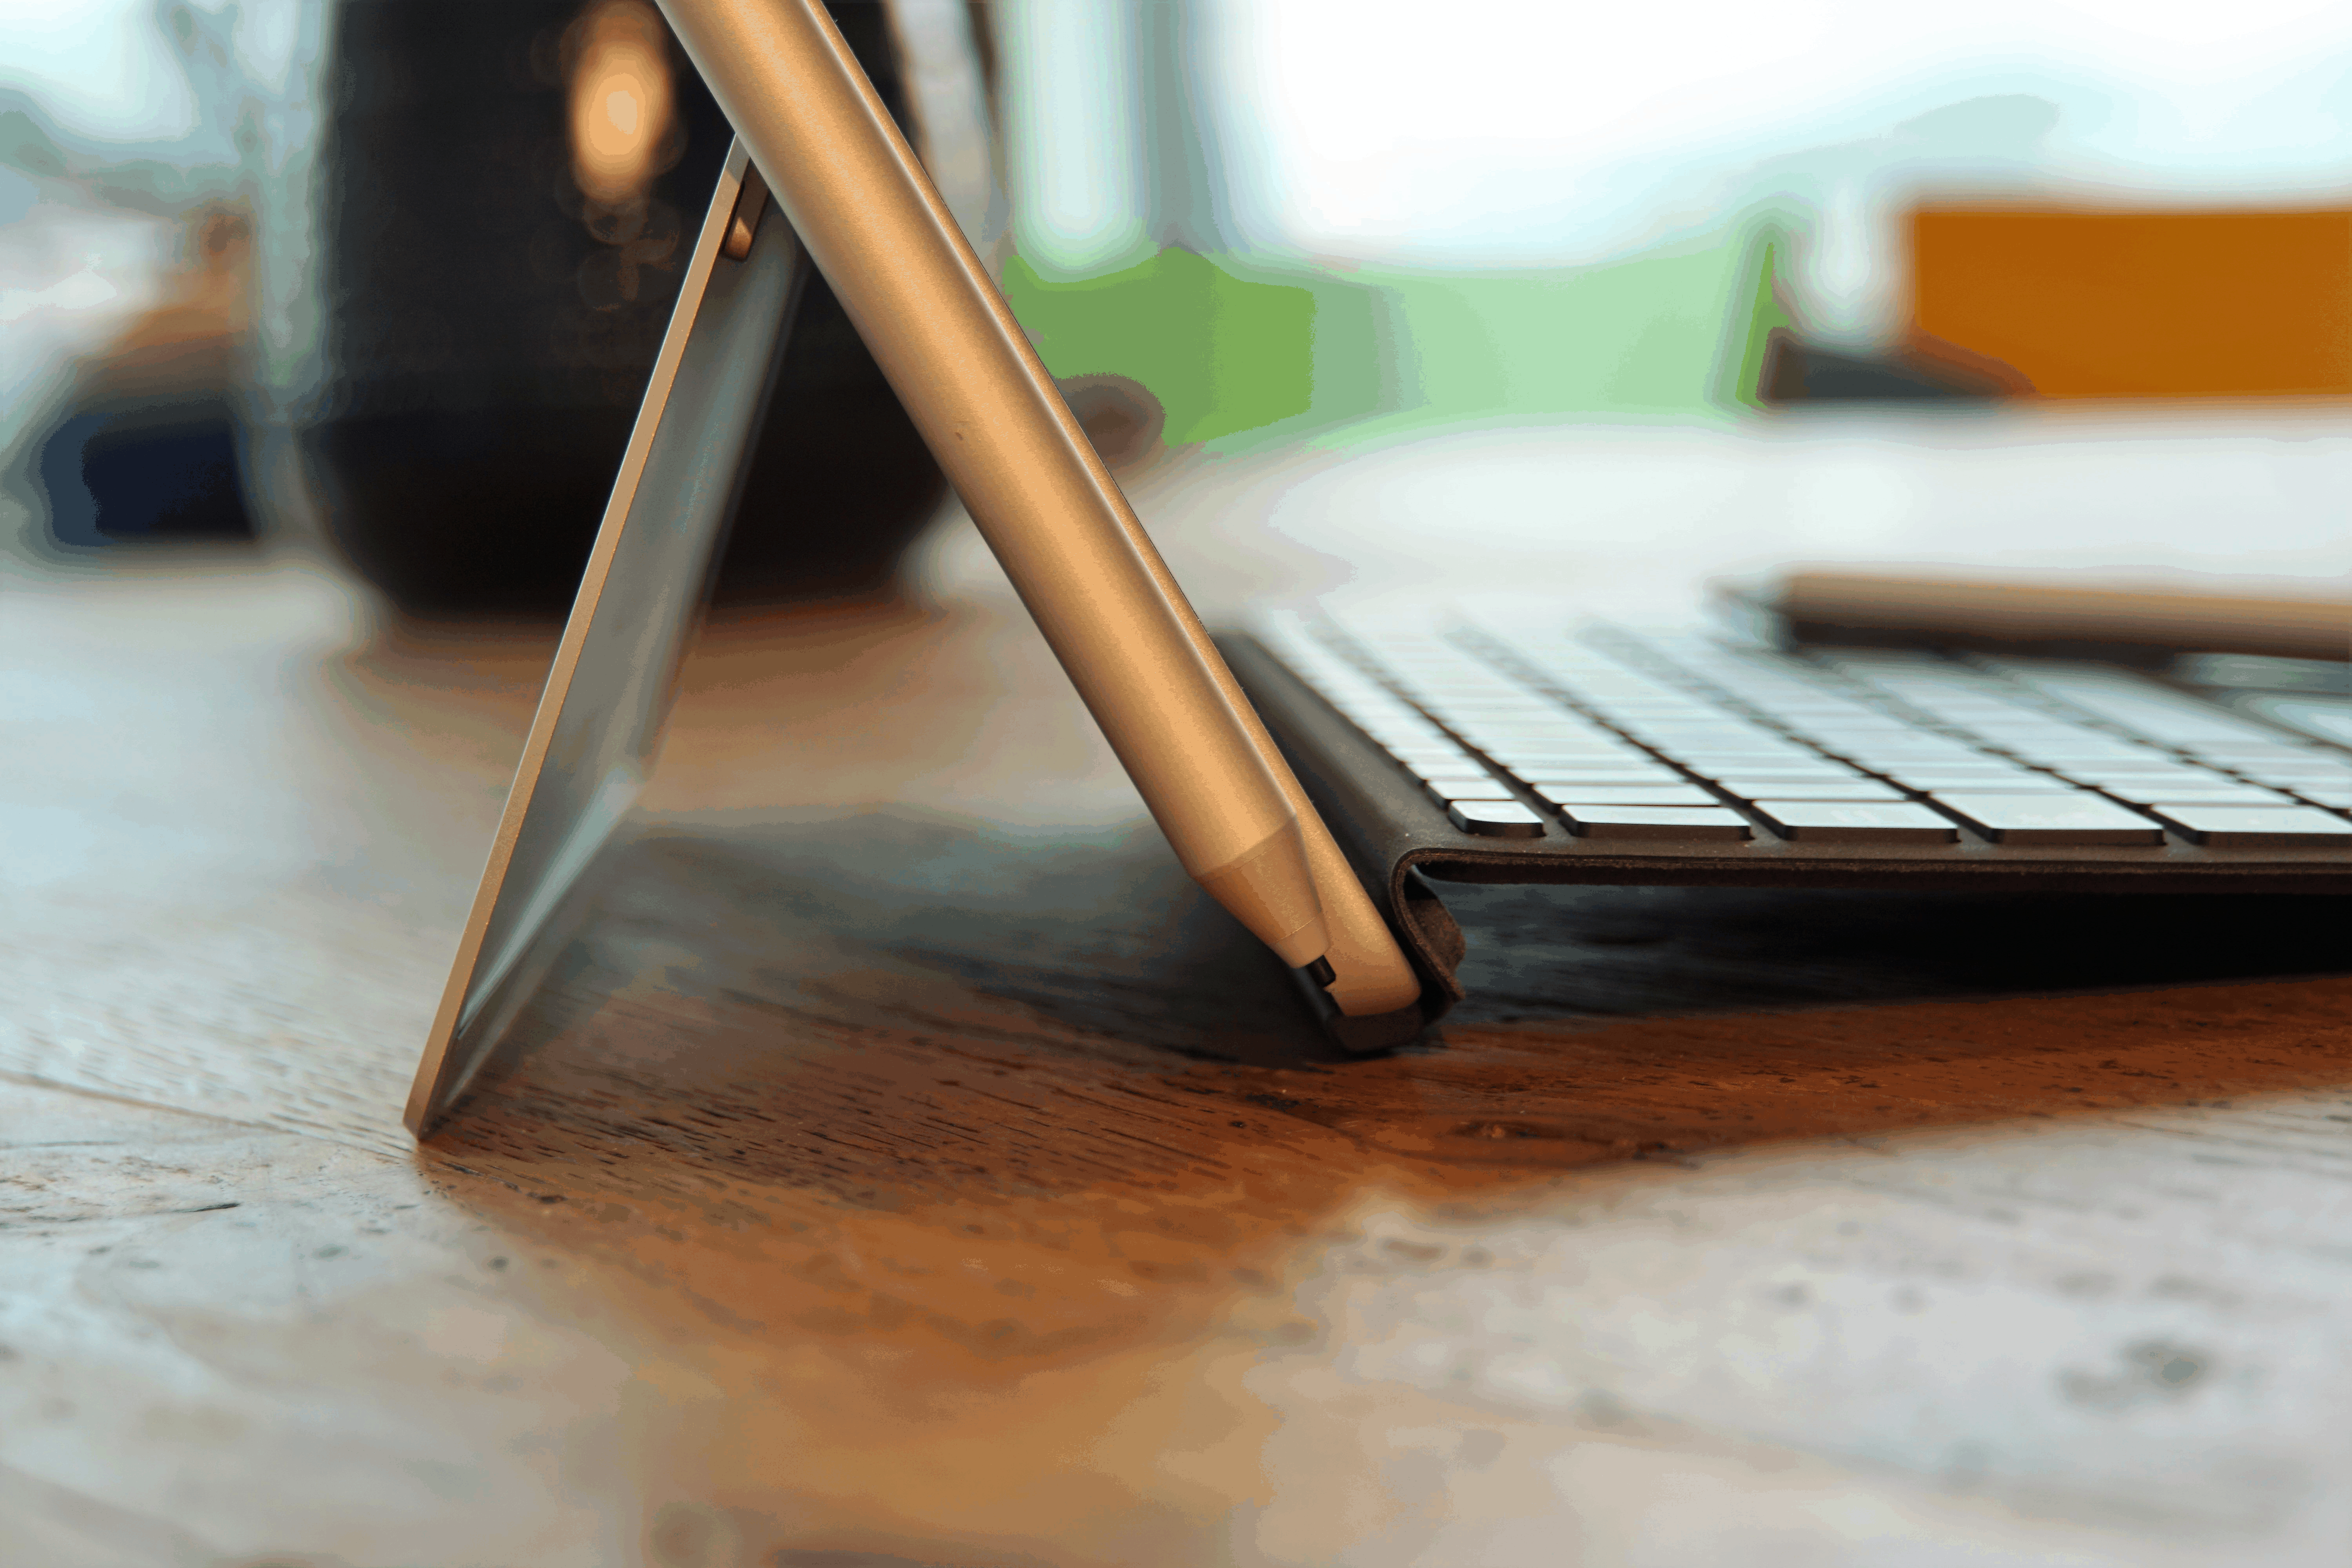 Surface Pen und Type Cover haften wie gewohnt magnetisch am Surface.